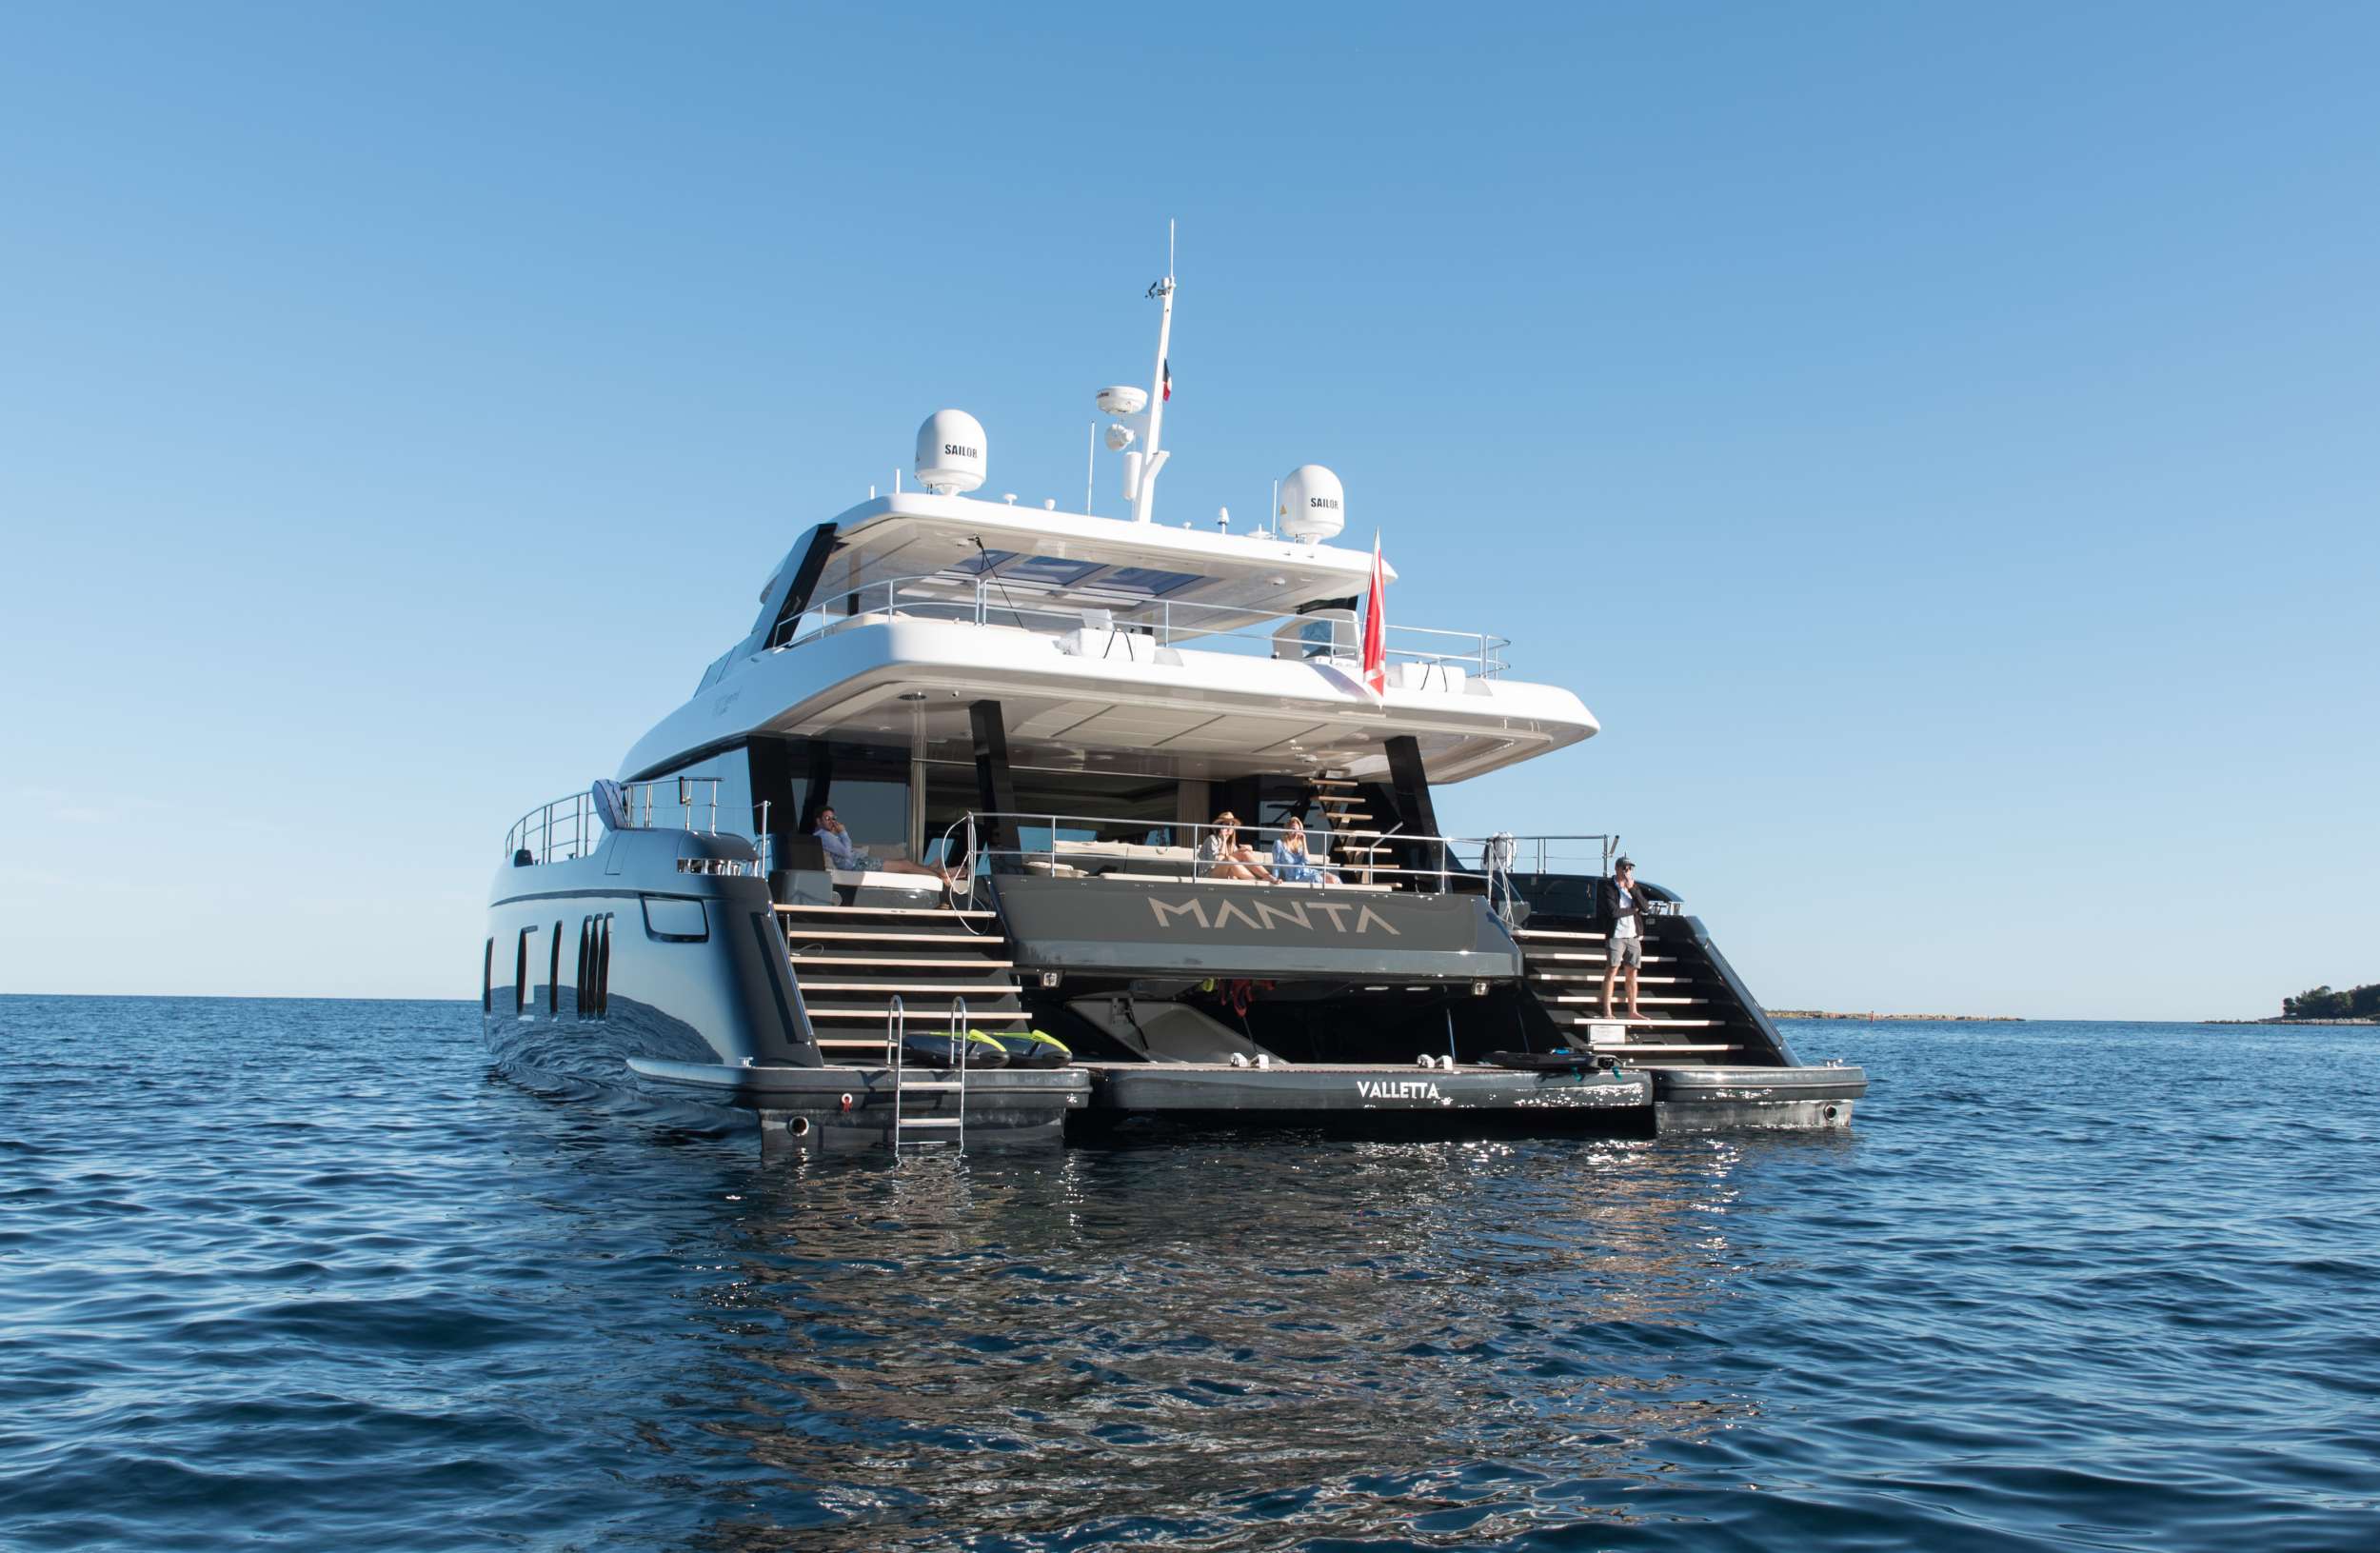 MANTA - Yacht Charter Barcelona & Boat hire in Riviera, Cors, Sard, Italy, Spain, Turkey, Croatia, Greece 1